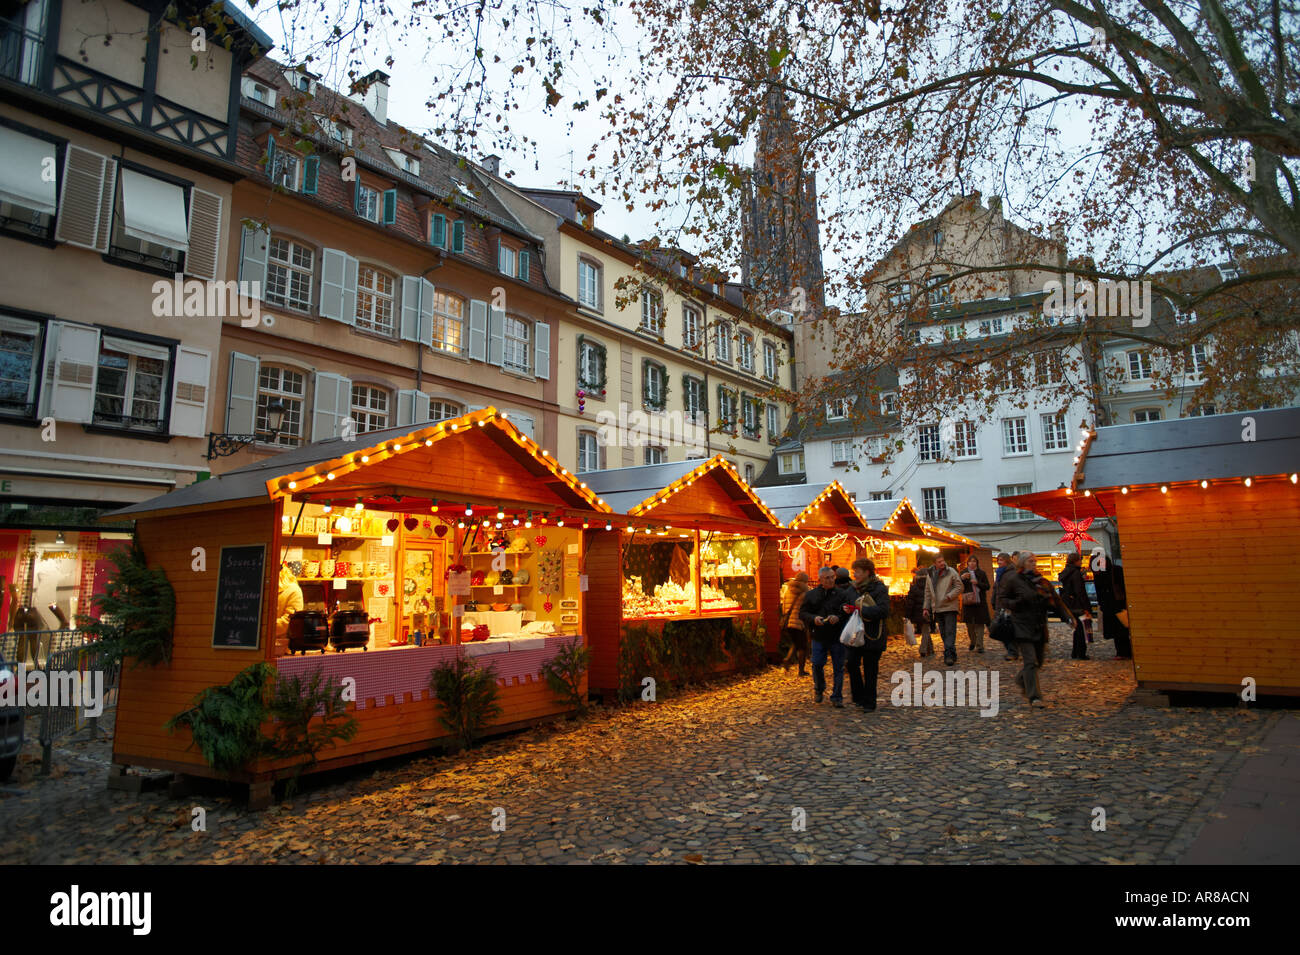 Marché de Noël au crépuscule - Strasbourg France Banque D'Images